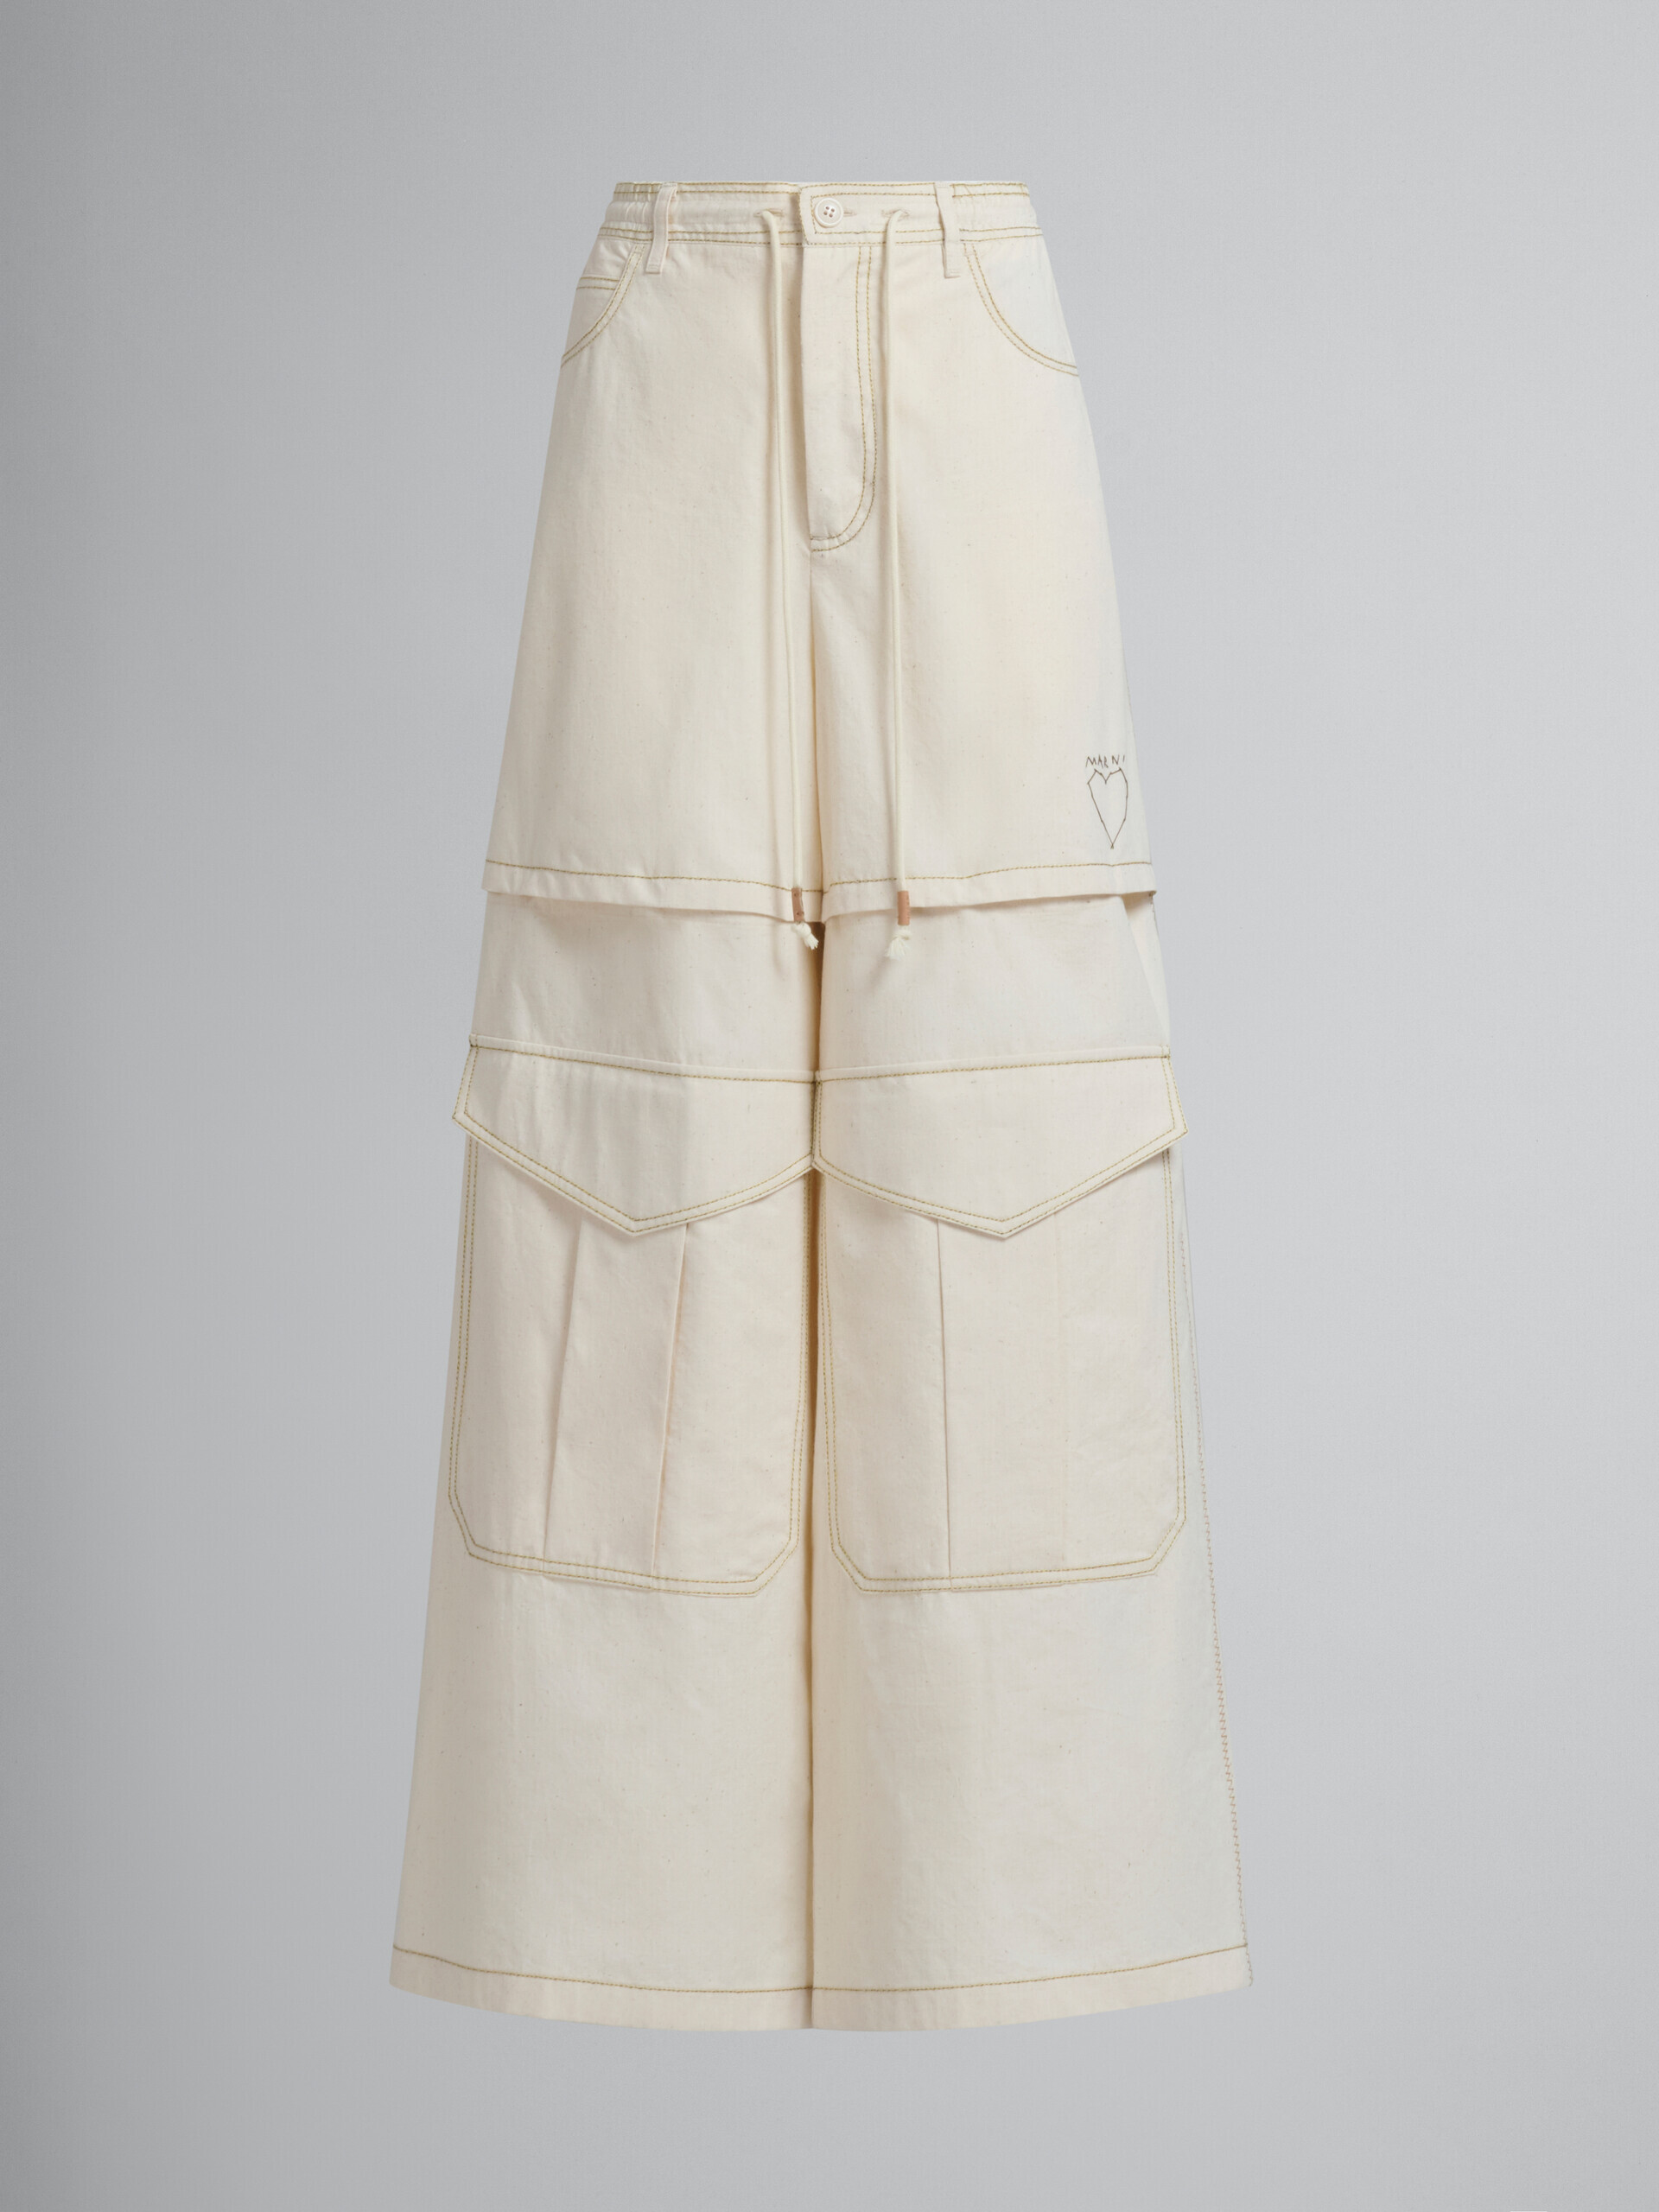 Pantalón cargo de lona de algodón orgánico beige claro con pespuntes Marni - Pantalones - Image 1